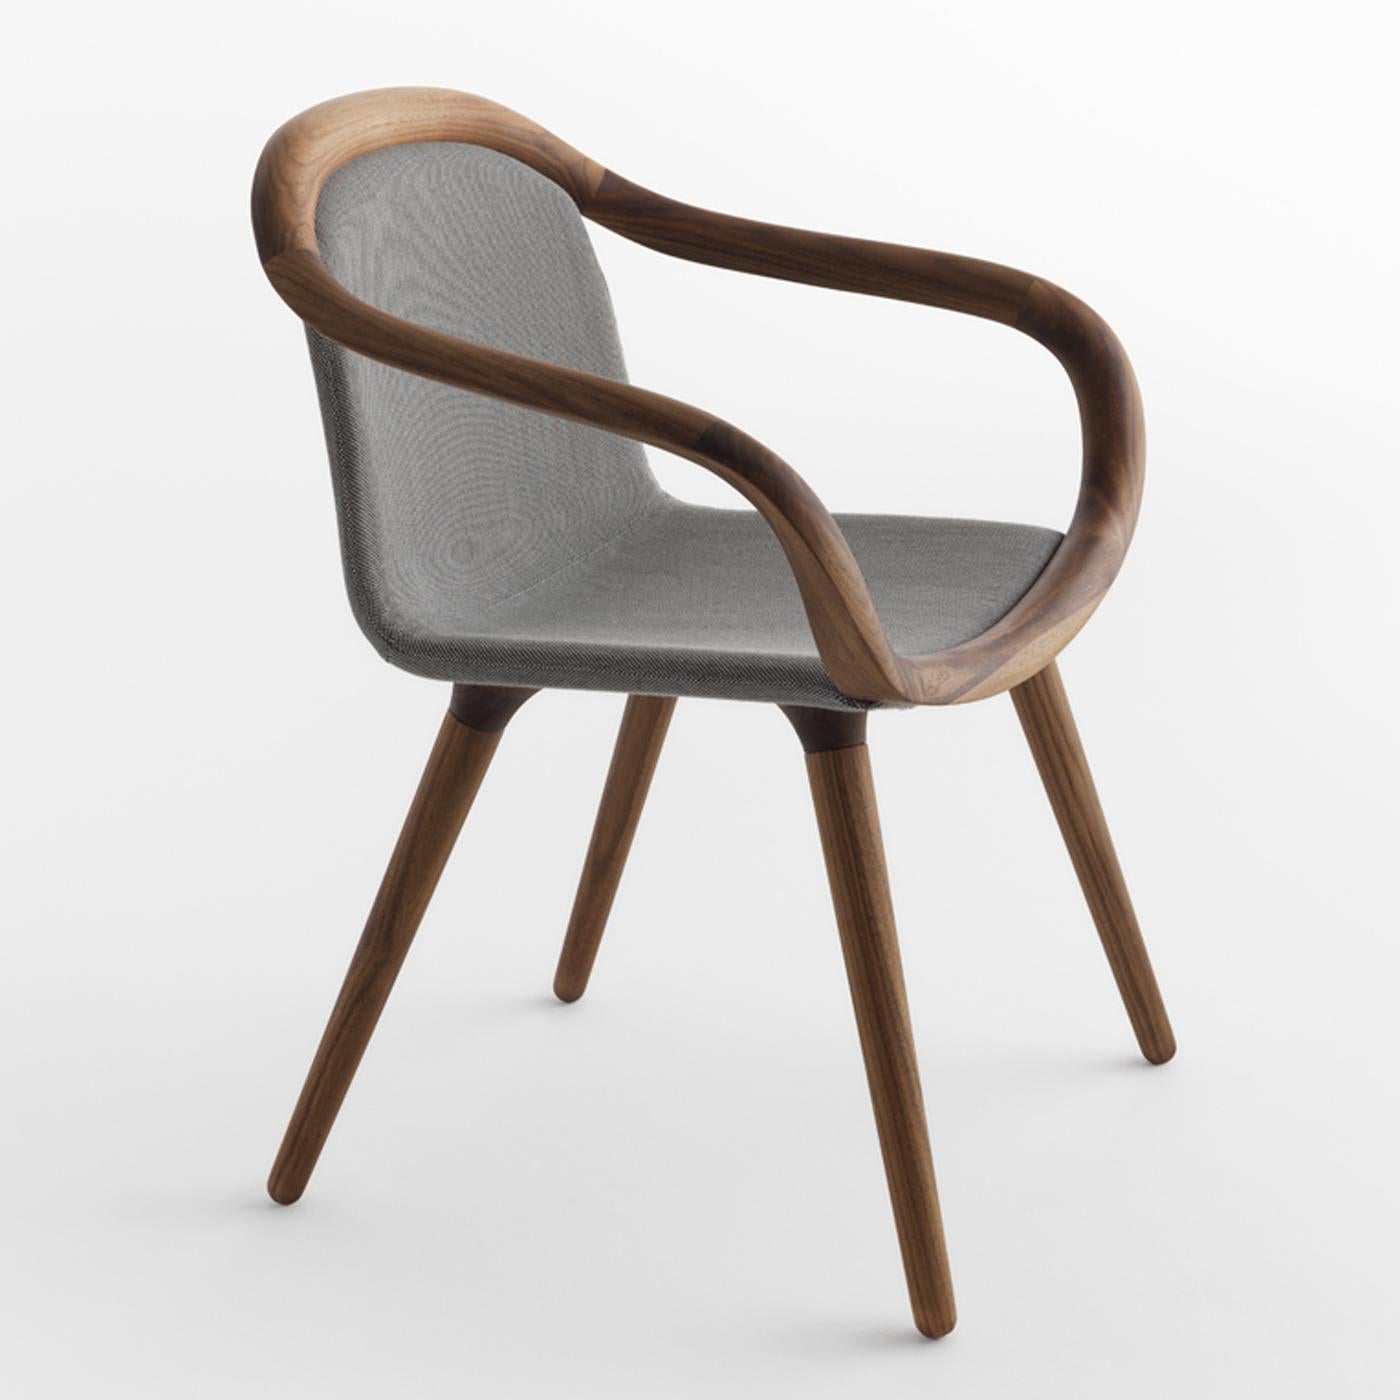 Des lignes sinueuses et douces décrivent la silhouette de cette chaise exquise, qui respire le confort et l'élégance. Reposant sur une structure en bois de noyer massif, avec des pieds inclinés et des accoudoirs ondulés, il présente une assise et un